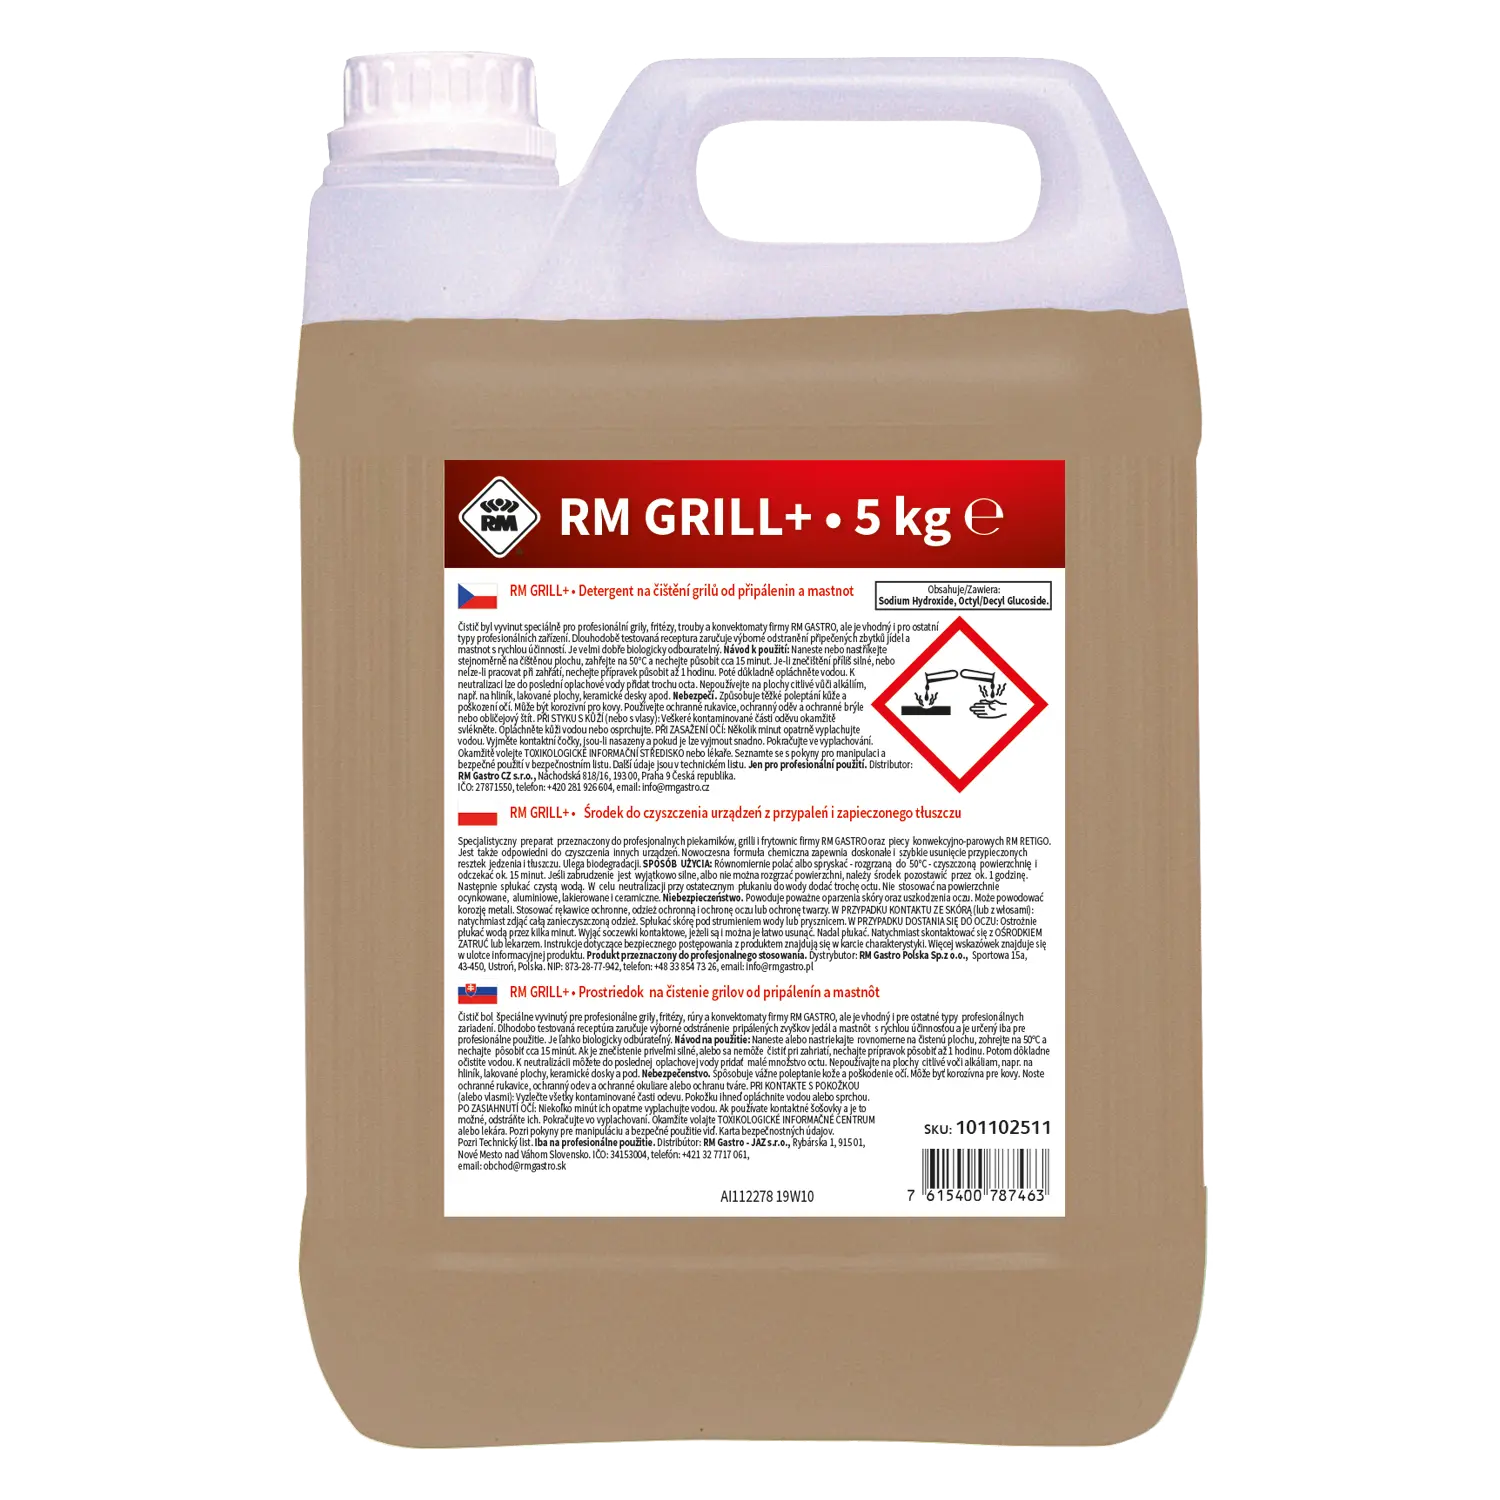 RM Grill+ 5 kg - Detergent na čištění grilu 5 kg